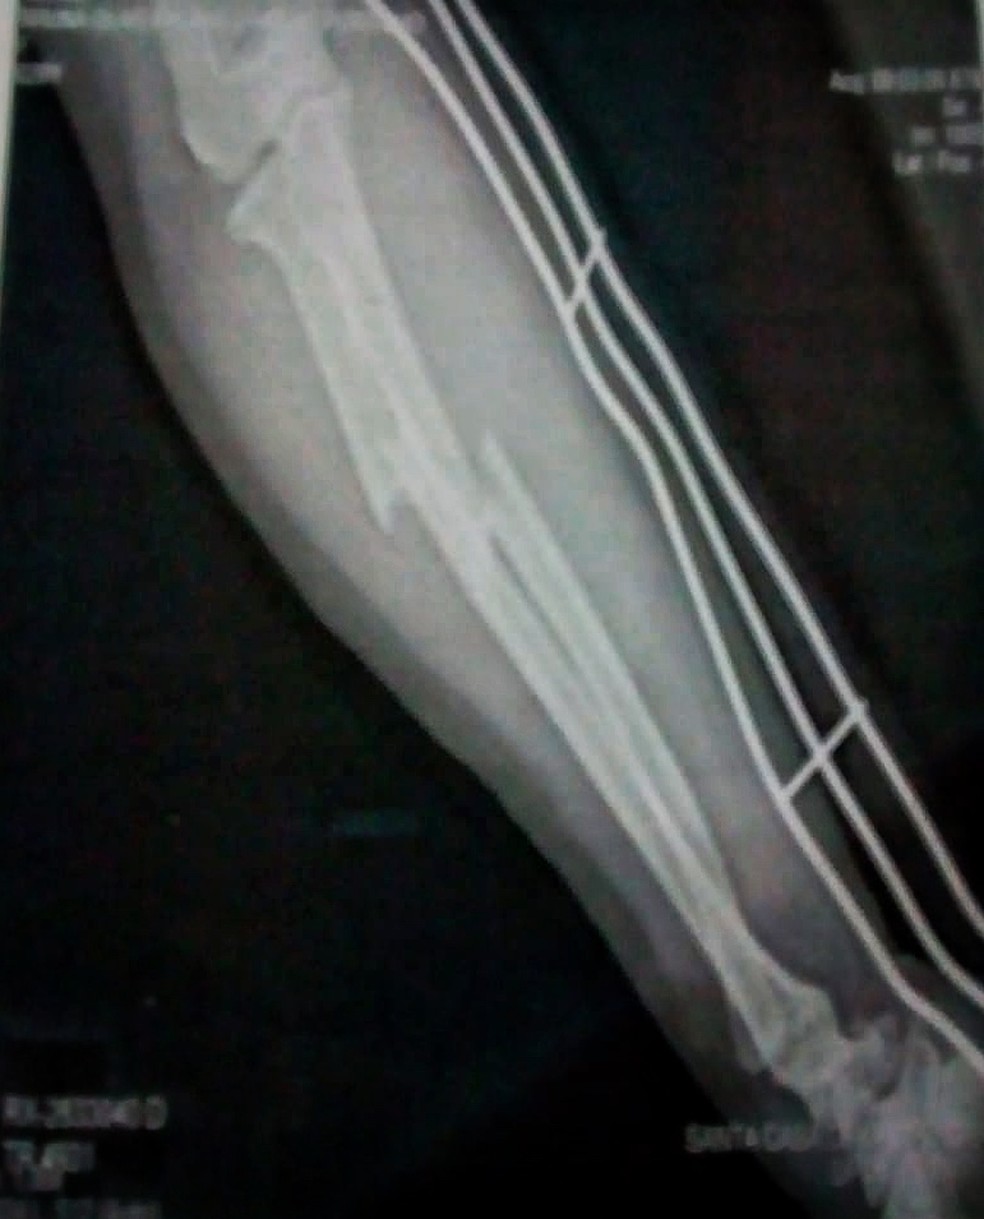 Bruna teve o braço quebrado em 2 lugares com um pé de cabra (Foto: Arquivo pessoal )